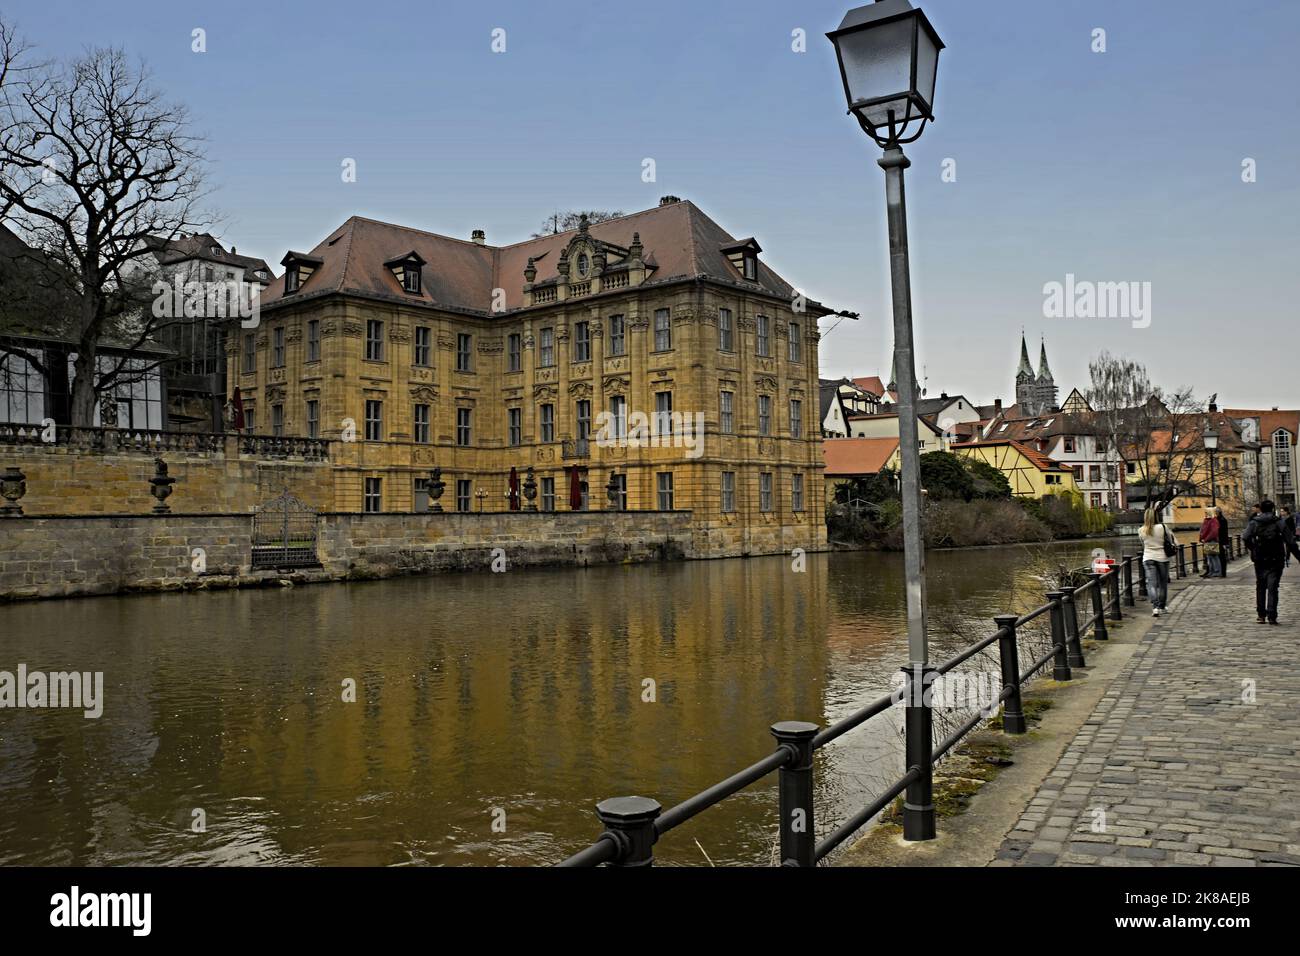 Aufnahme vom gegenüberliegenden Ufer mit Blick in Richtung Altstadt Foto Stock